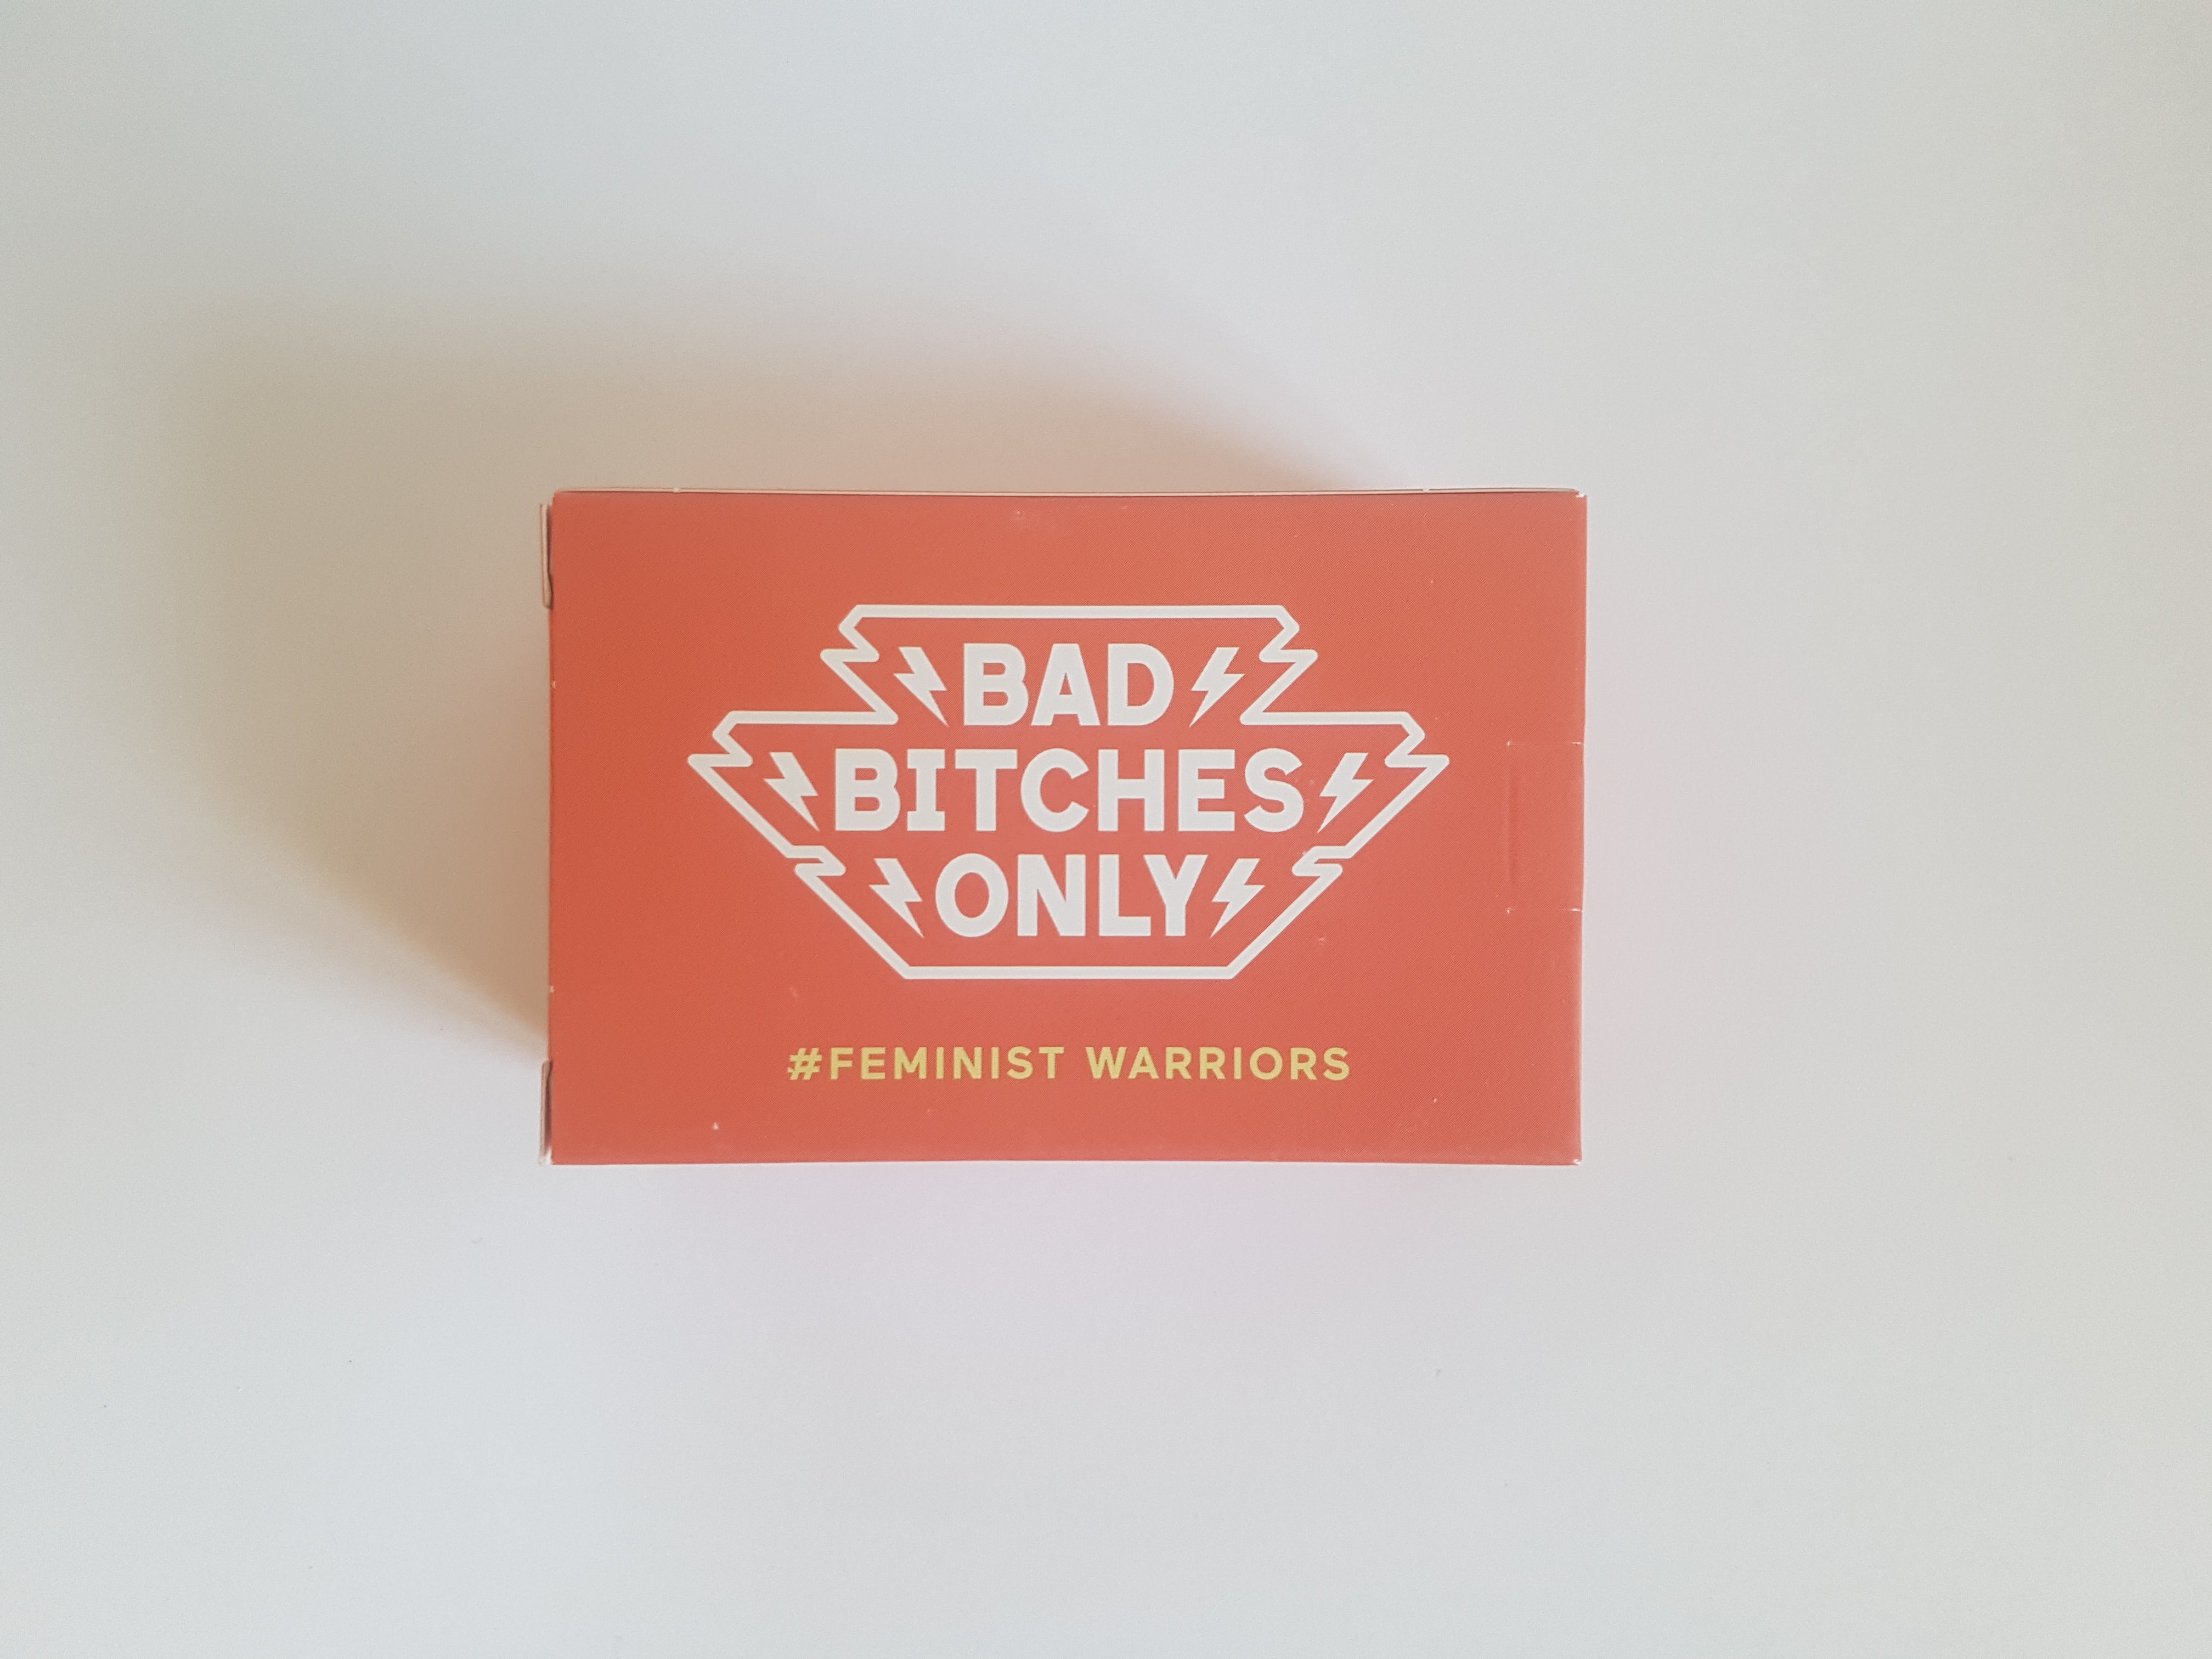 LE jeu de société féministe Bad Bitches Only version Feminist Warriors